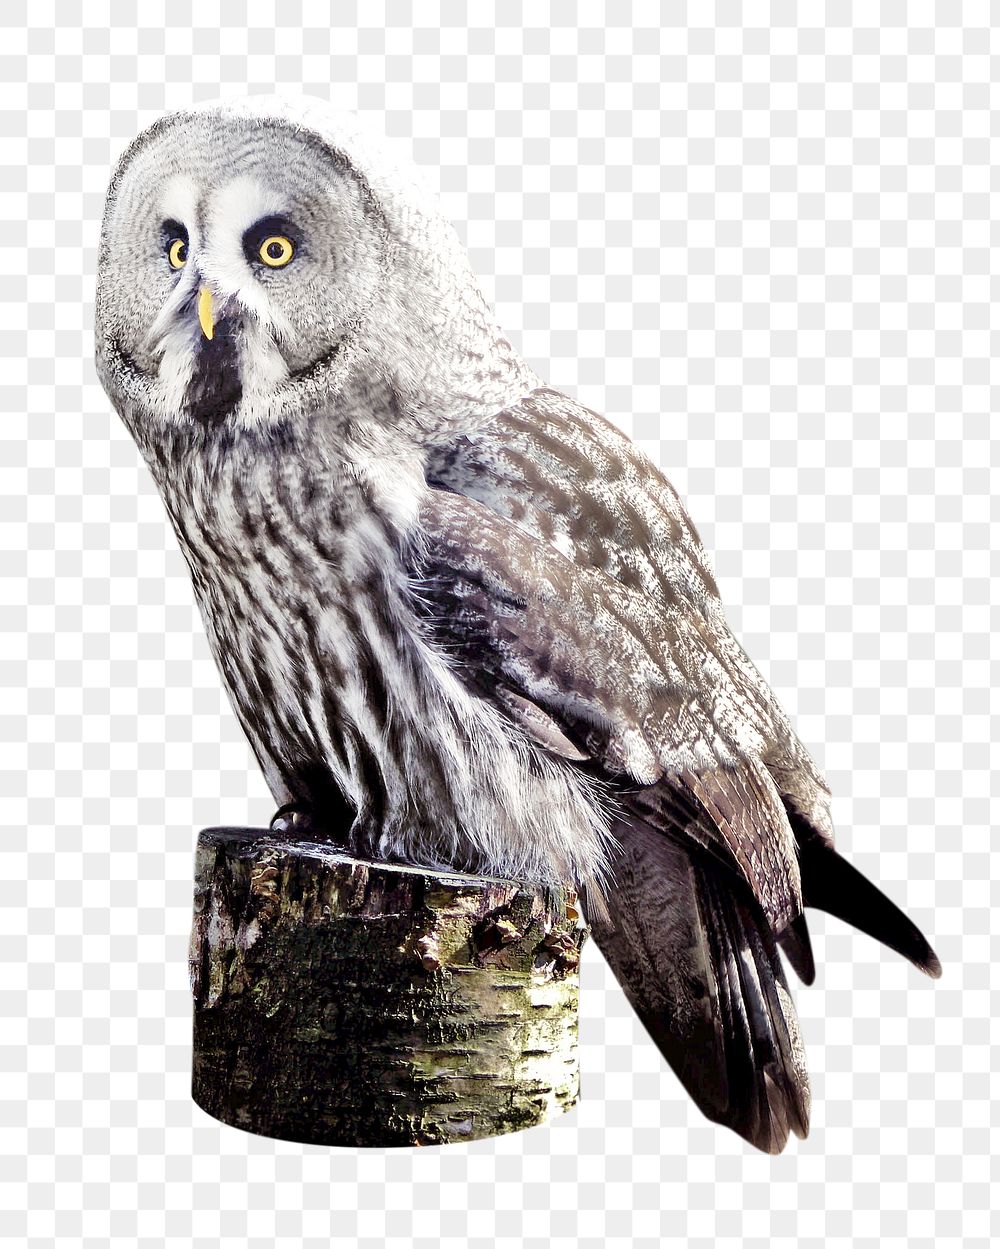 Grey owl png, design element, transparent background